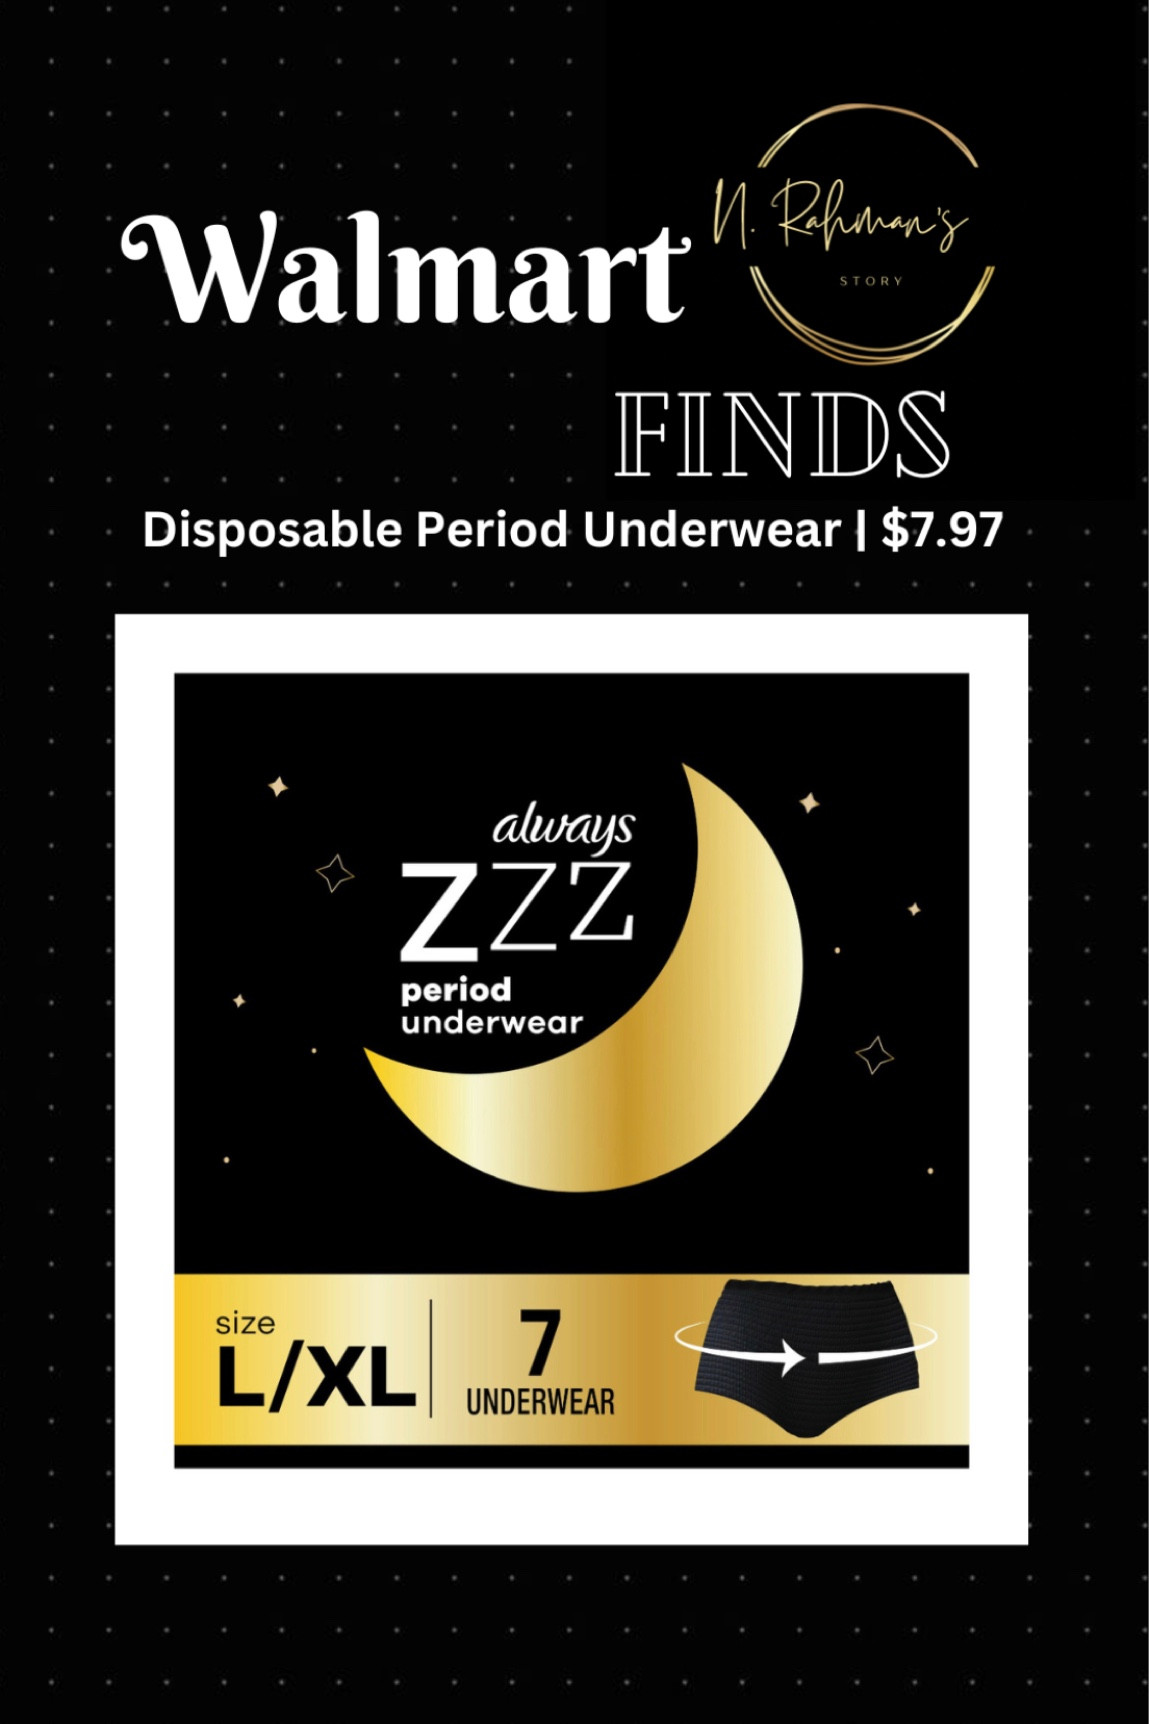 Always ZZZ Overnight Disposable Period Underwear S/M